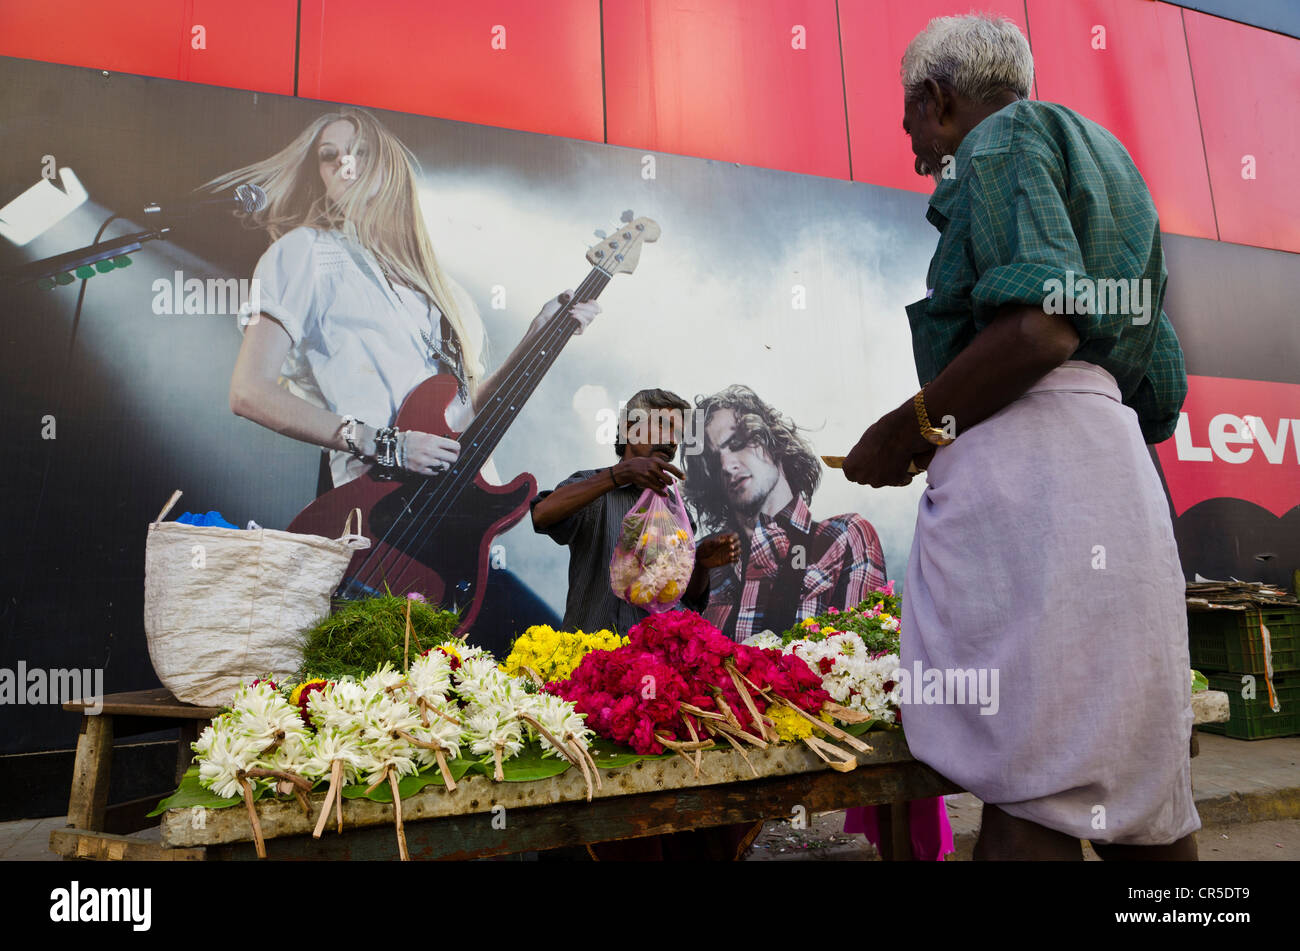 Flowerseller avec sa boutique mis en place en face d'une affiche de concert, Madurai, Tamil Nadu, Inde, Asie Banque D'Images